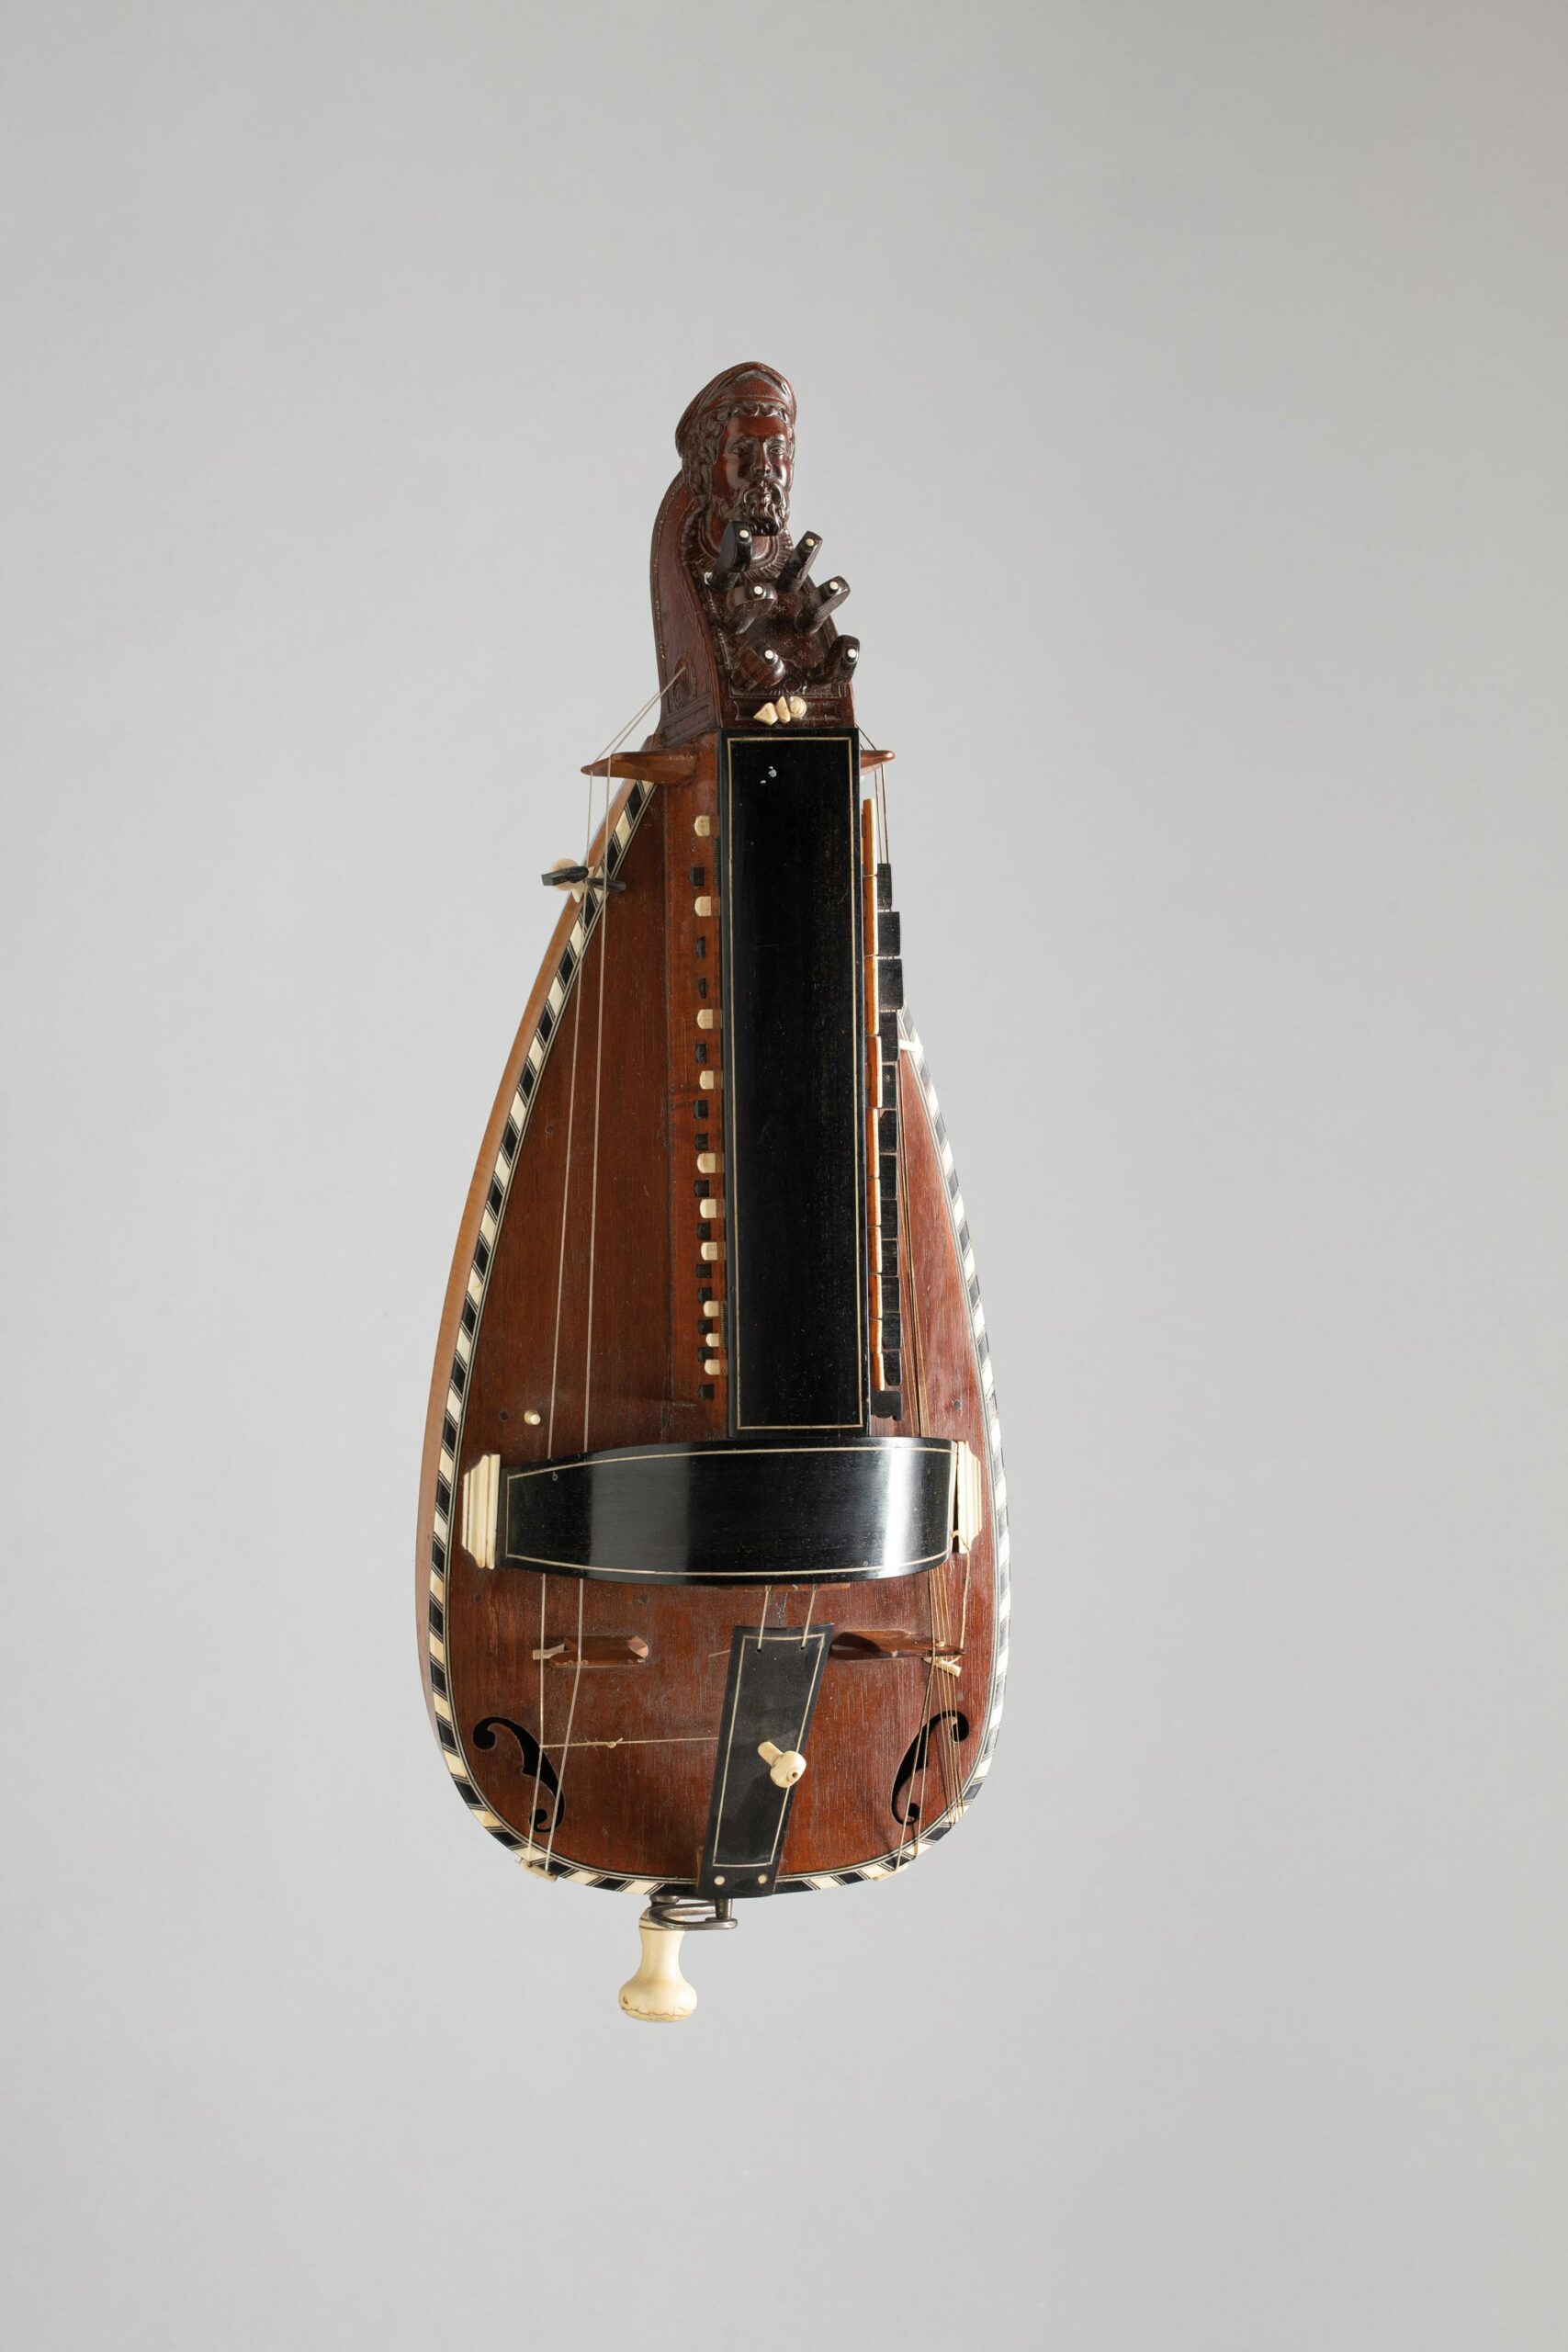 Vielle à roue, probablement par PIMPARD Instrument mis en vente par Vichy Enchères le 5 novembre 2022 © C. Darbelet